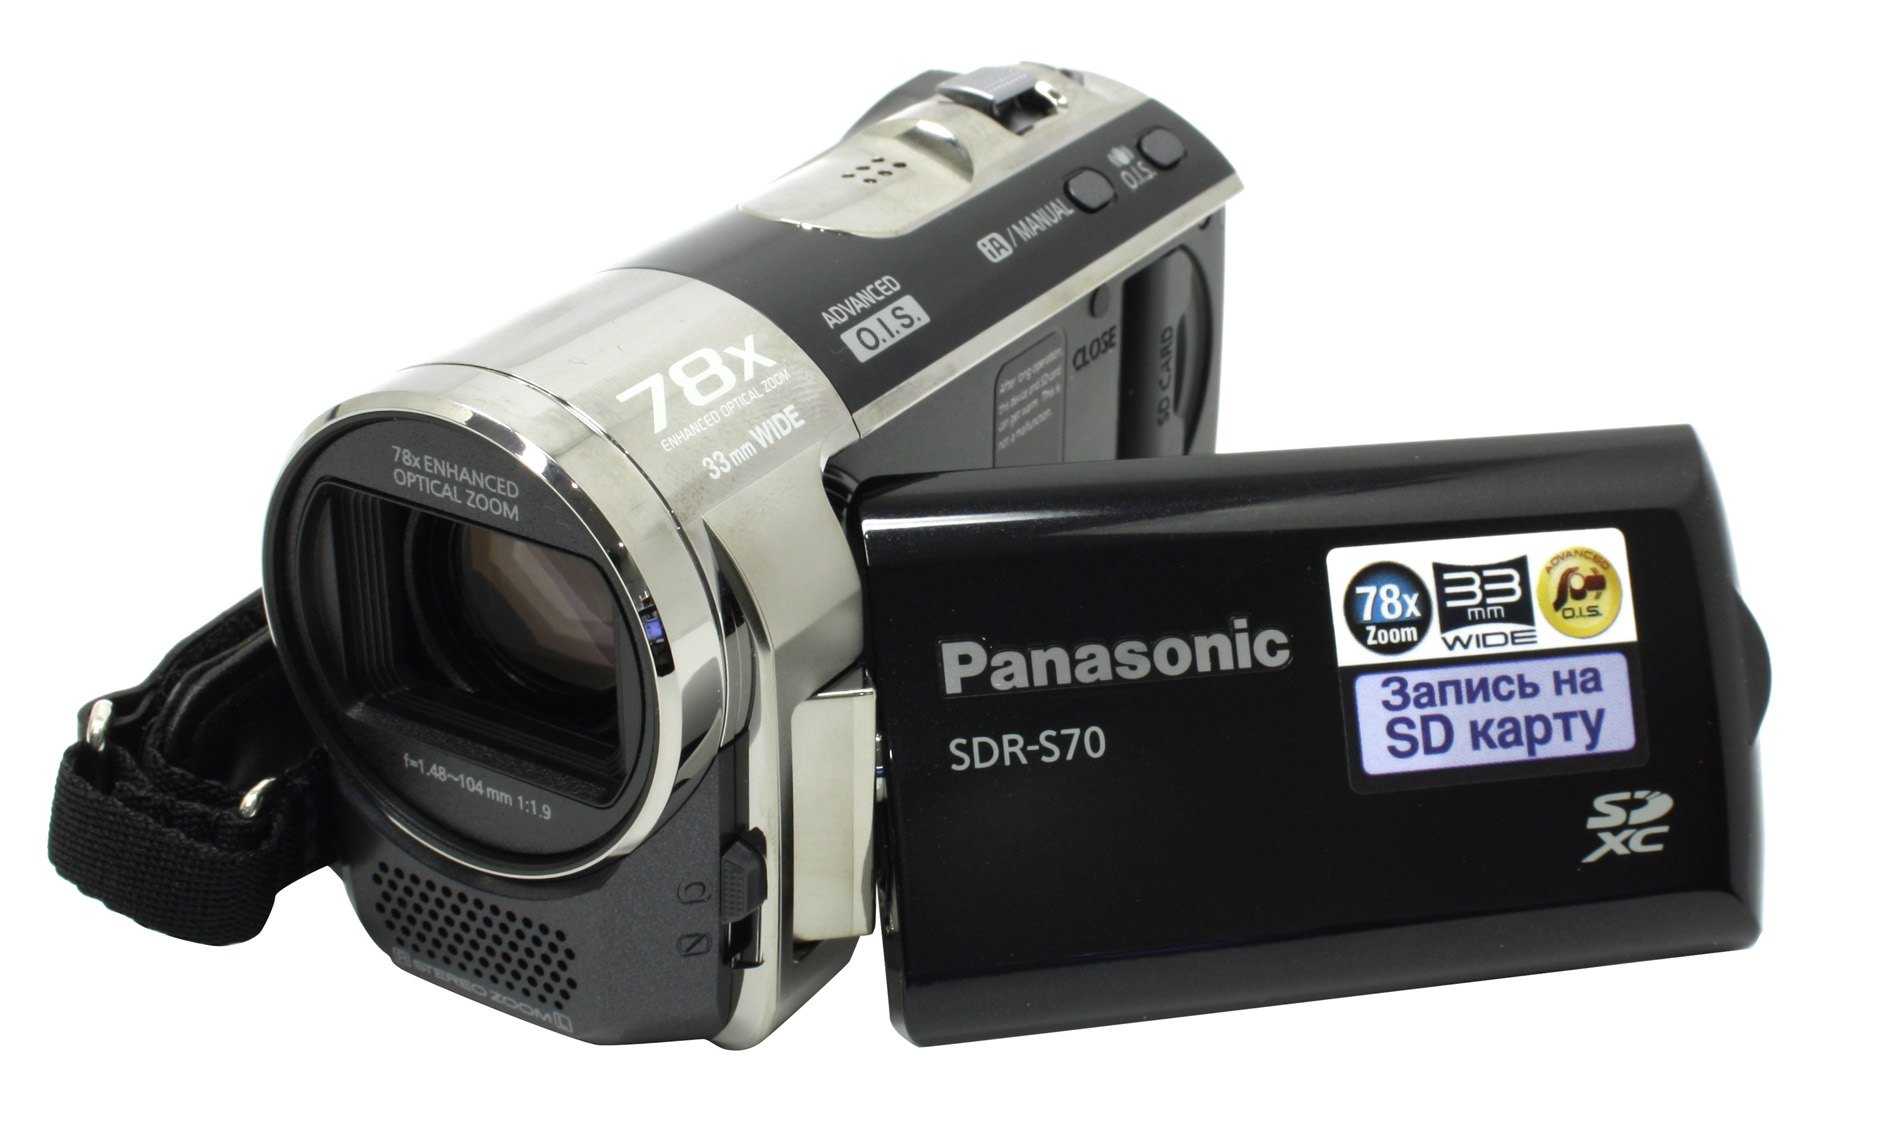 Panasonic sdr-s70 - купить , скидки, цена, отзывы, обзор, характеристики - видеокамеры